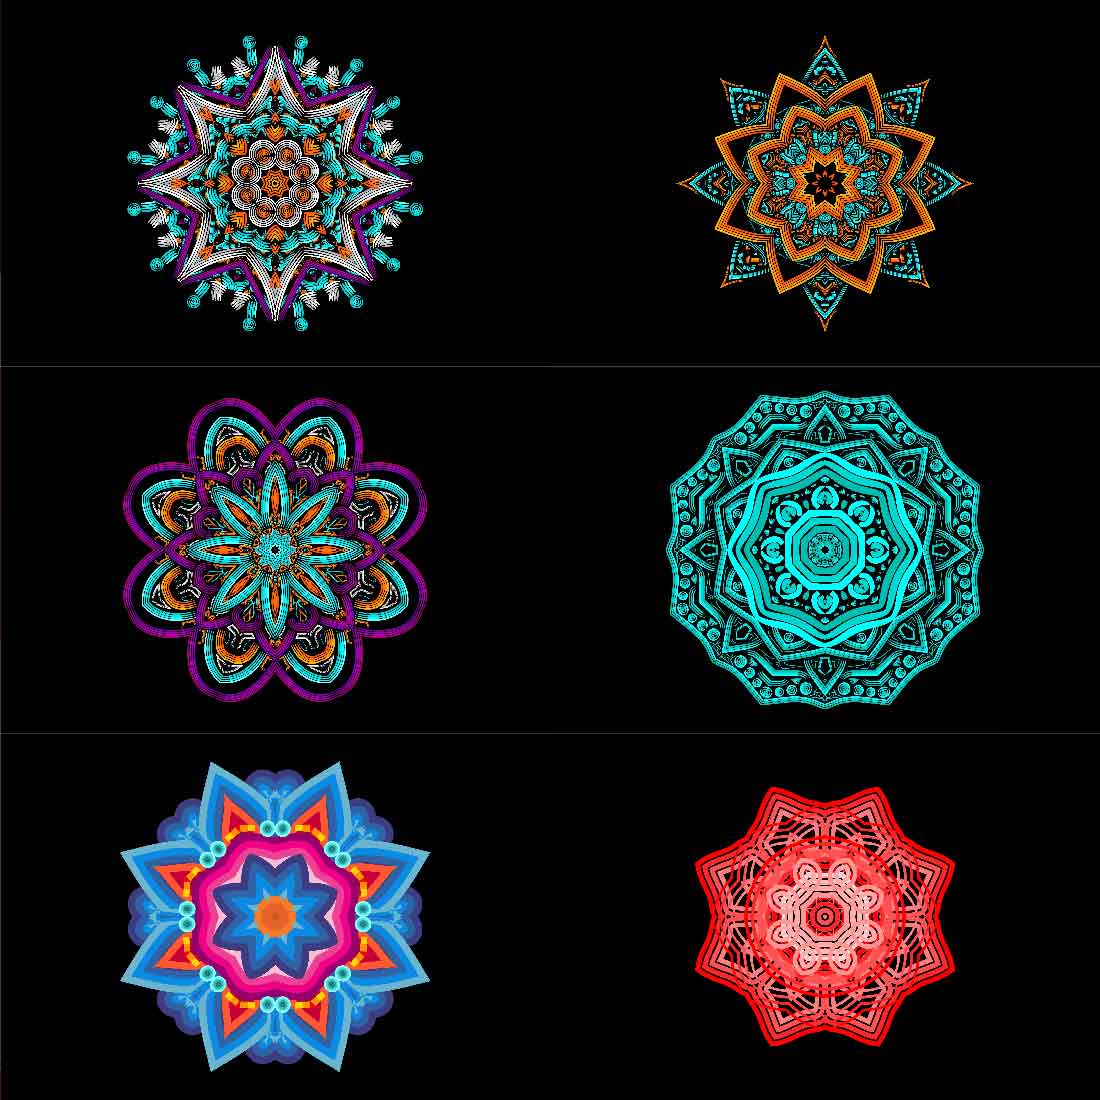 Pack of unique images of geometric mandalas